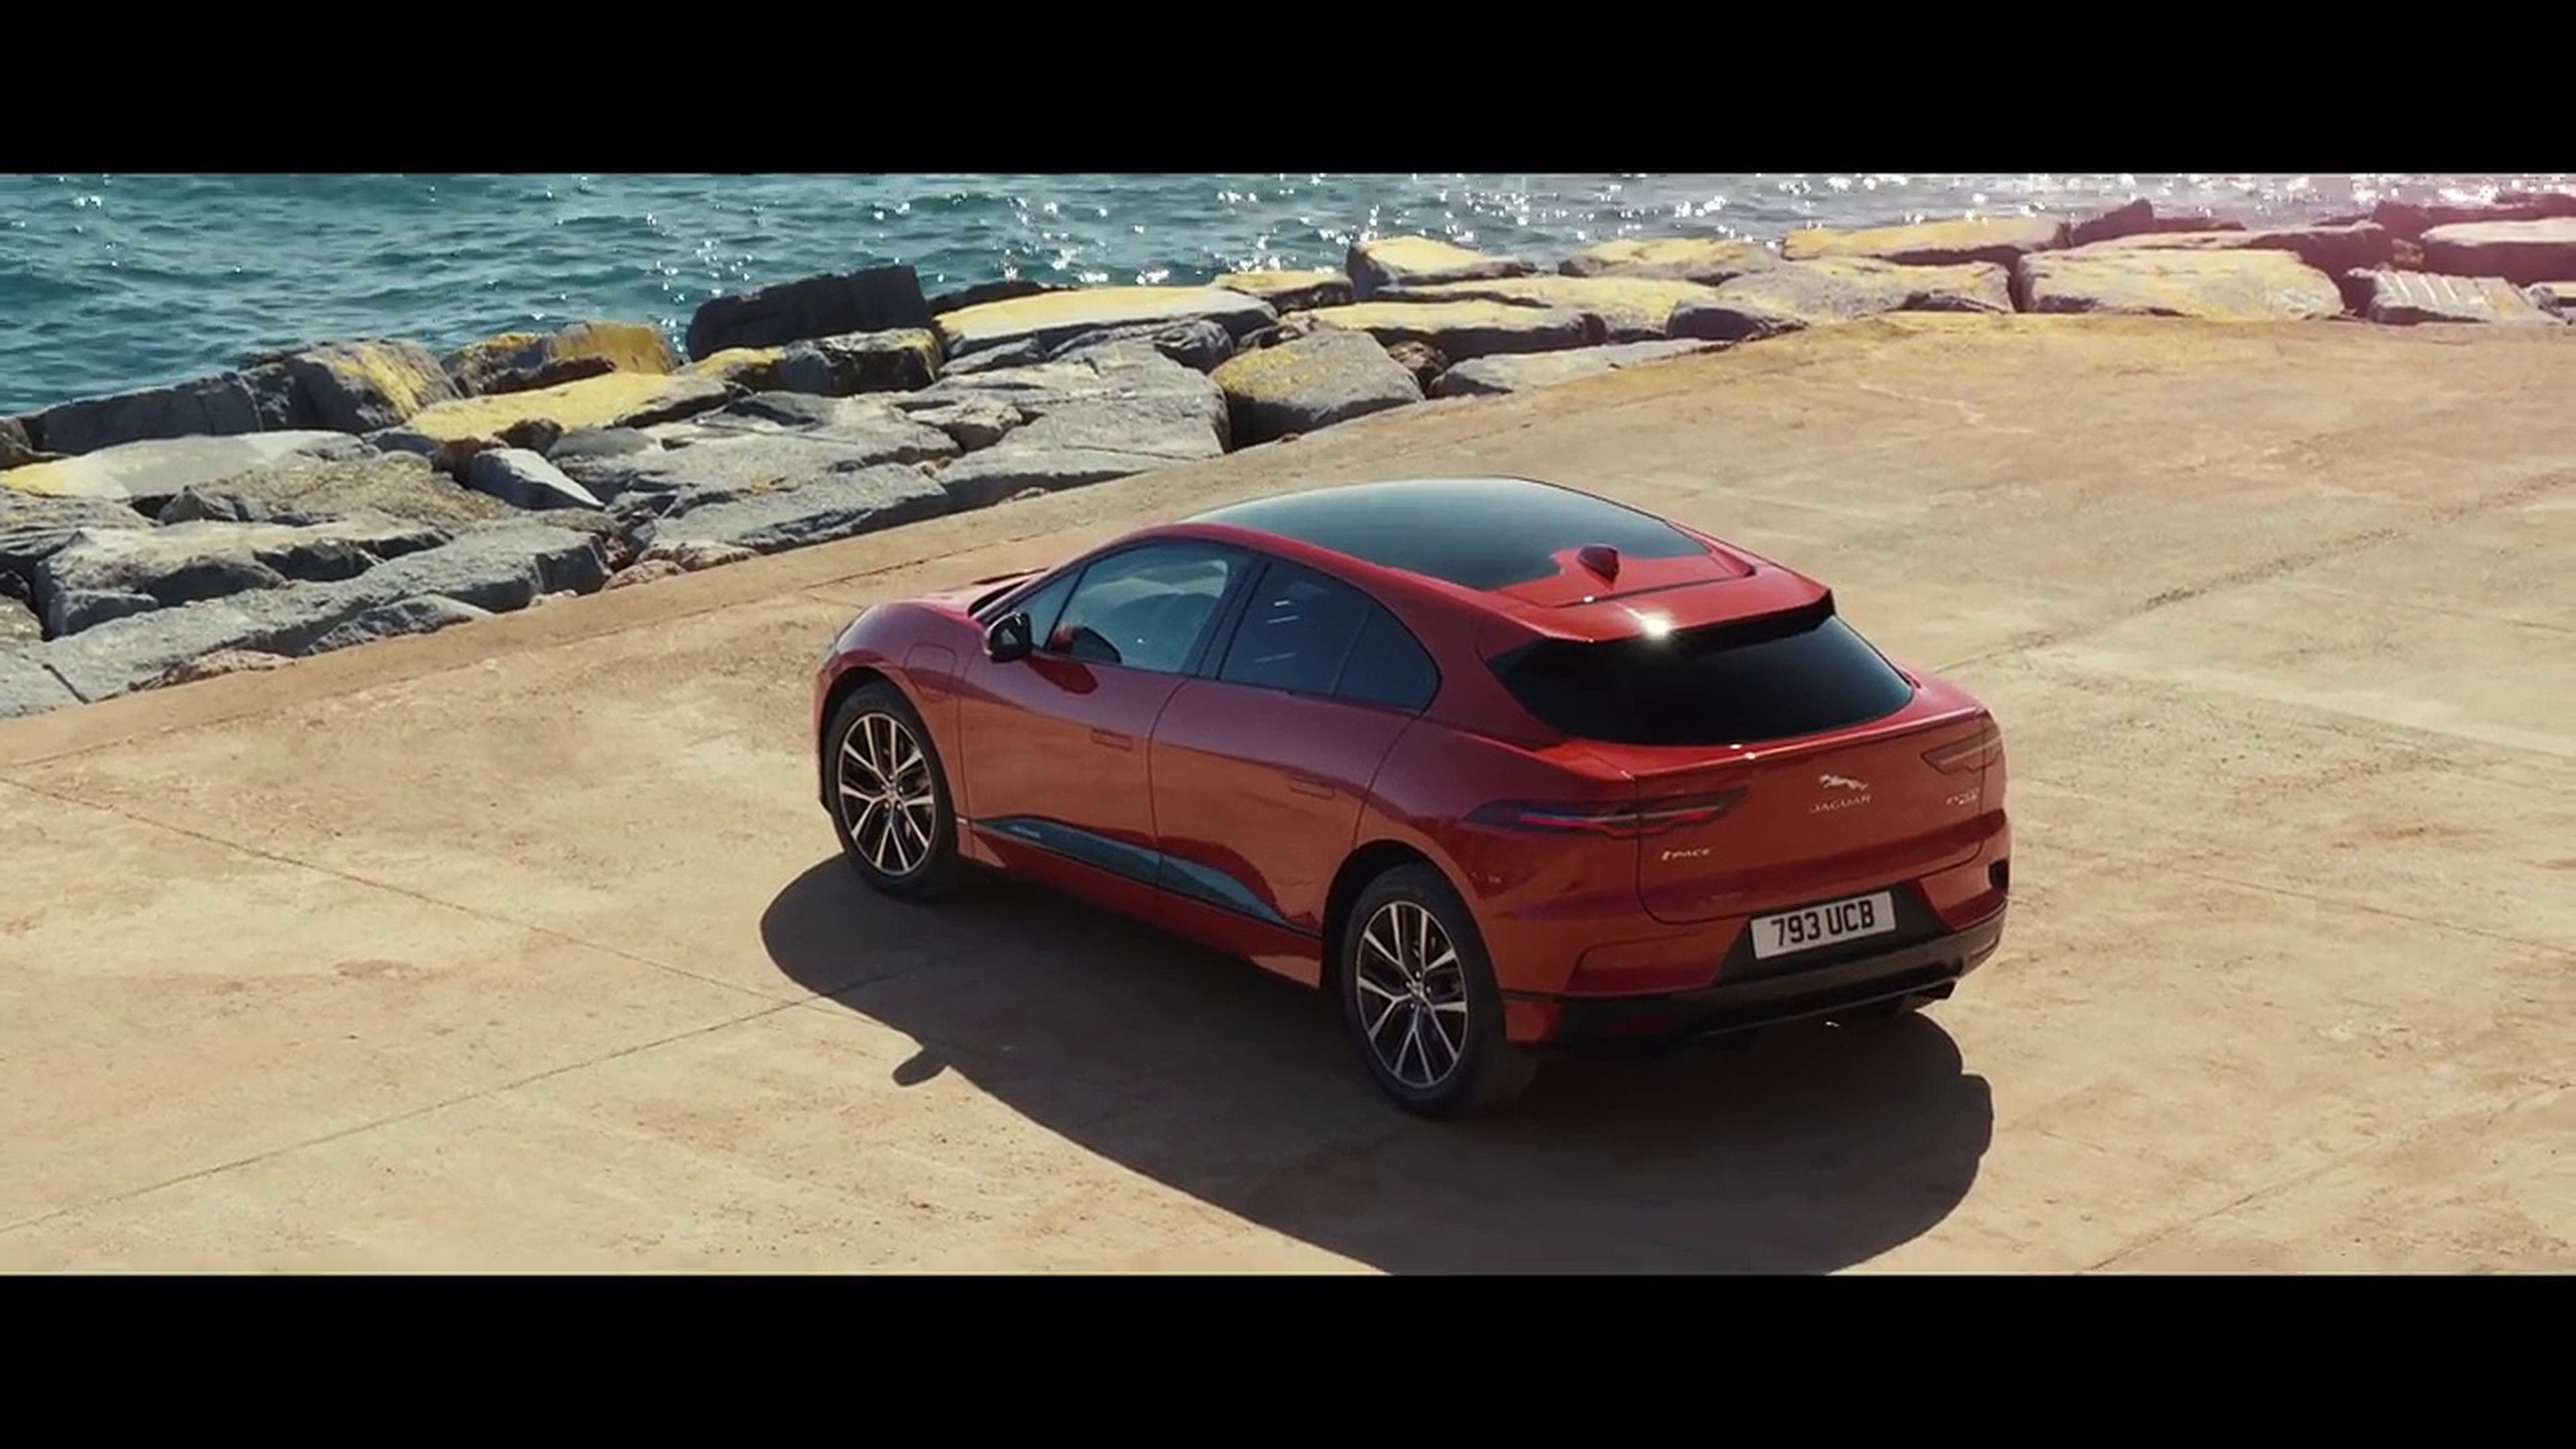 VÍDEO: el Jaguar i-PACE dándolo todo, ¿el eléctrico más polifacético?